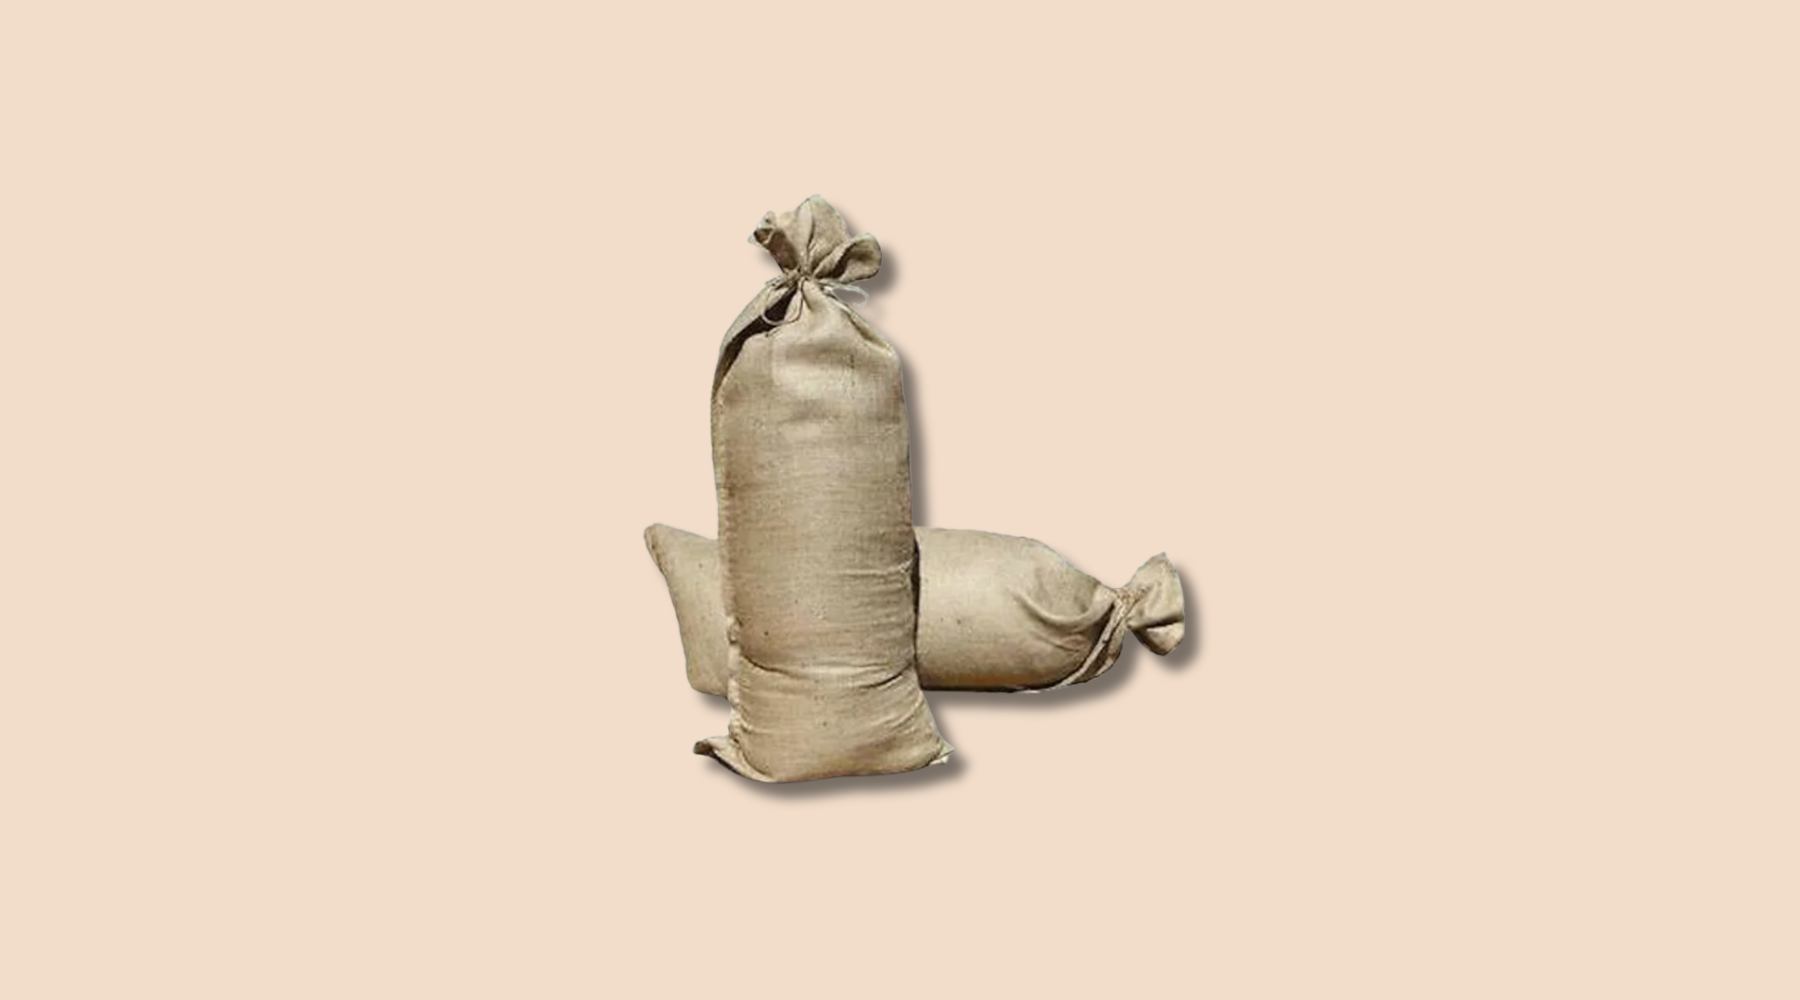 The Versatile Sandbags: 10 Uses for Sandbags